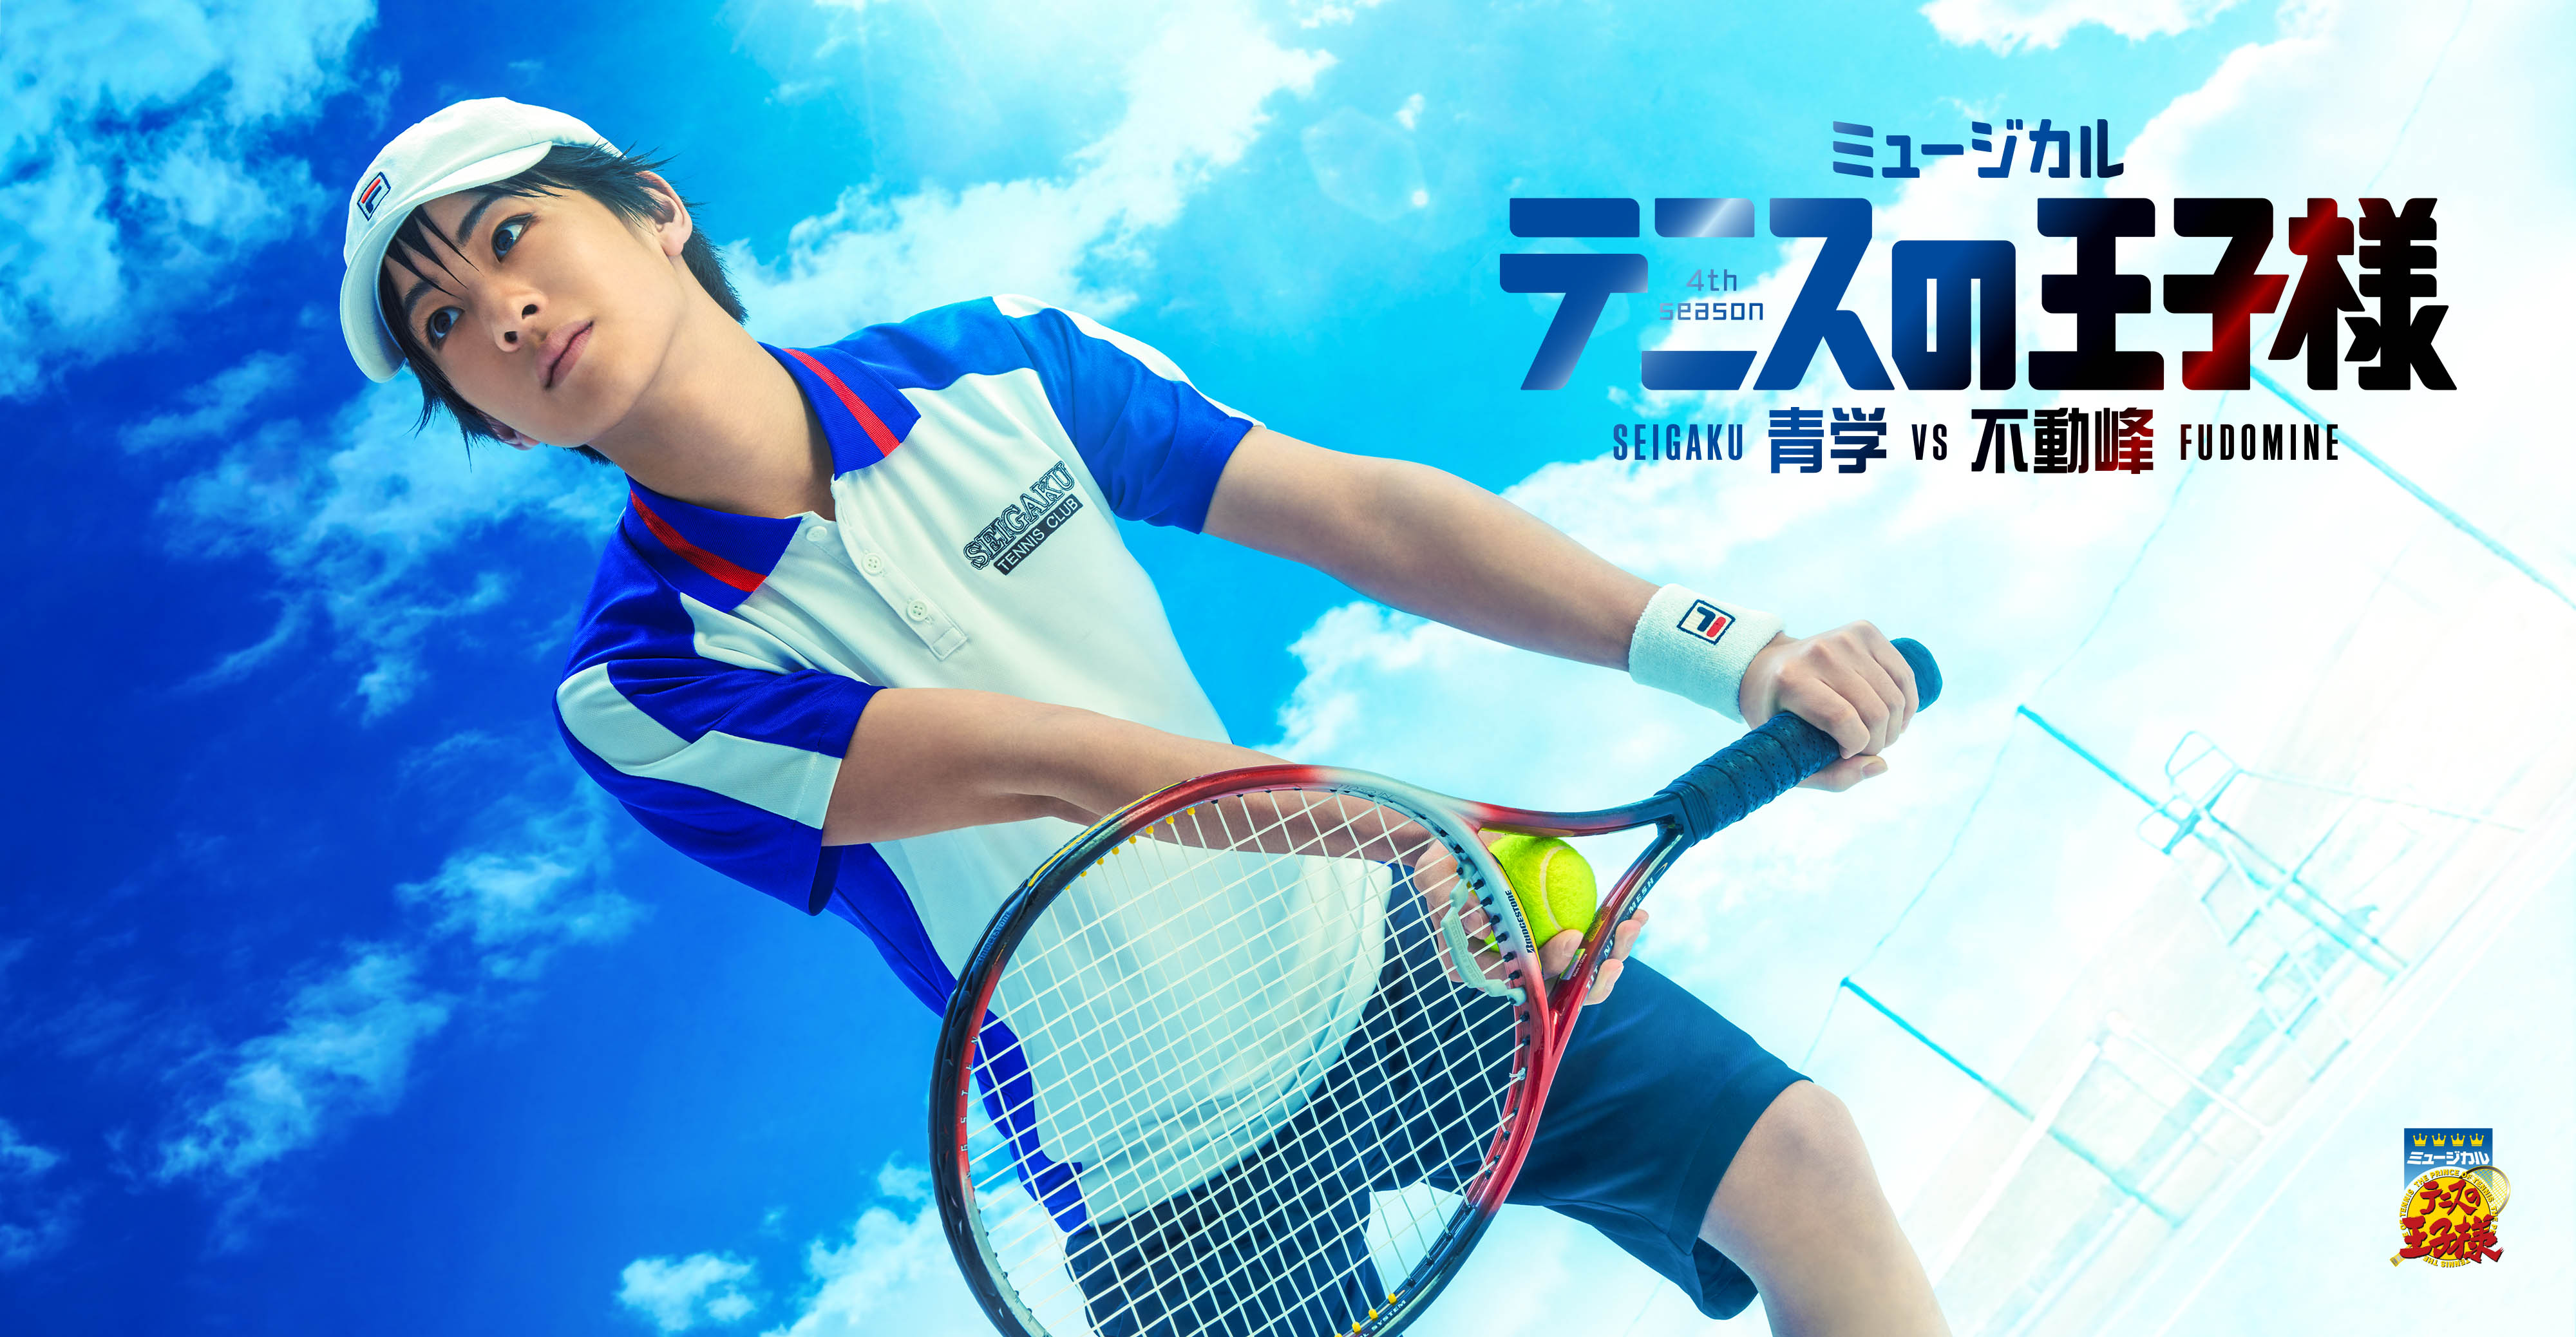 ミュージカル テニスの王子様 4thシーズン 青学vs不動峰 ミュージカル テニスの王子様 新テニスの王子様 公式サイト